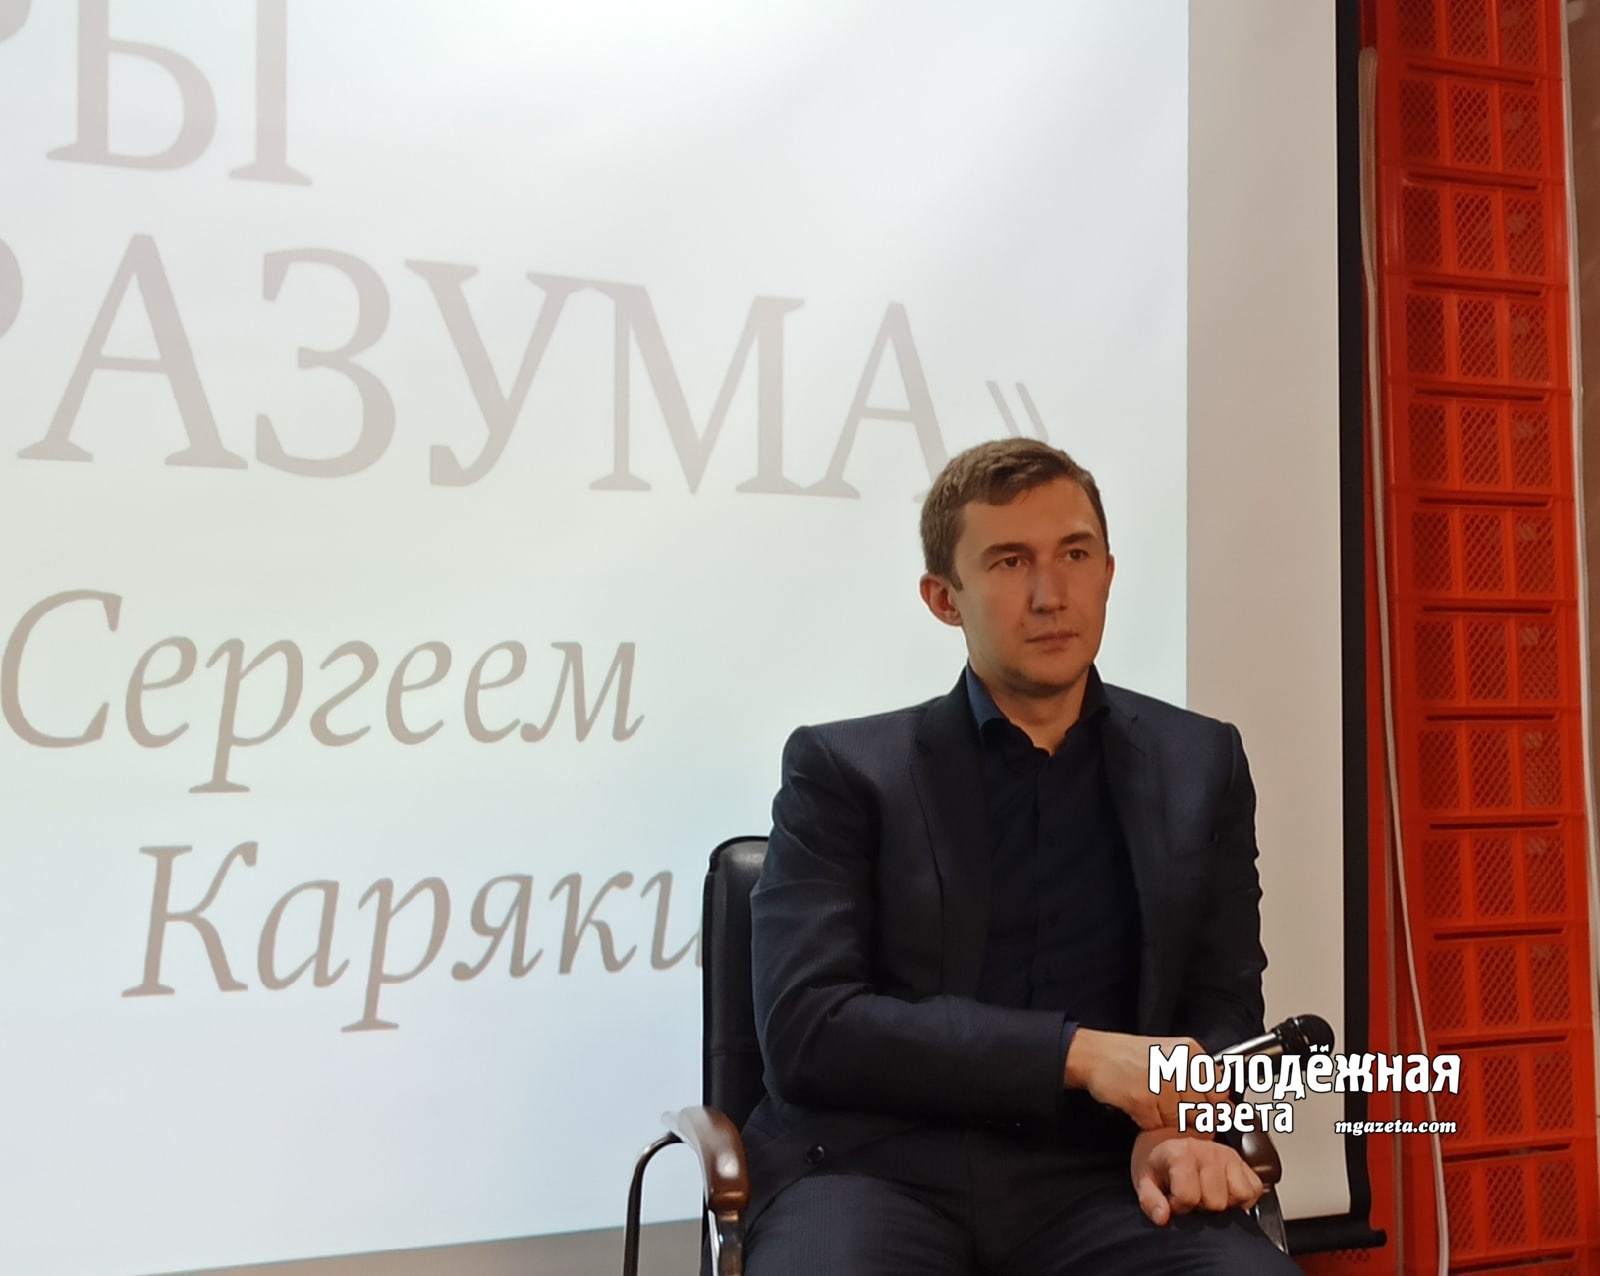 Сергей Карякин: Я люблю Уфу, в Башкирии живет мой тренер